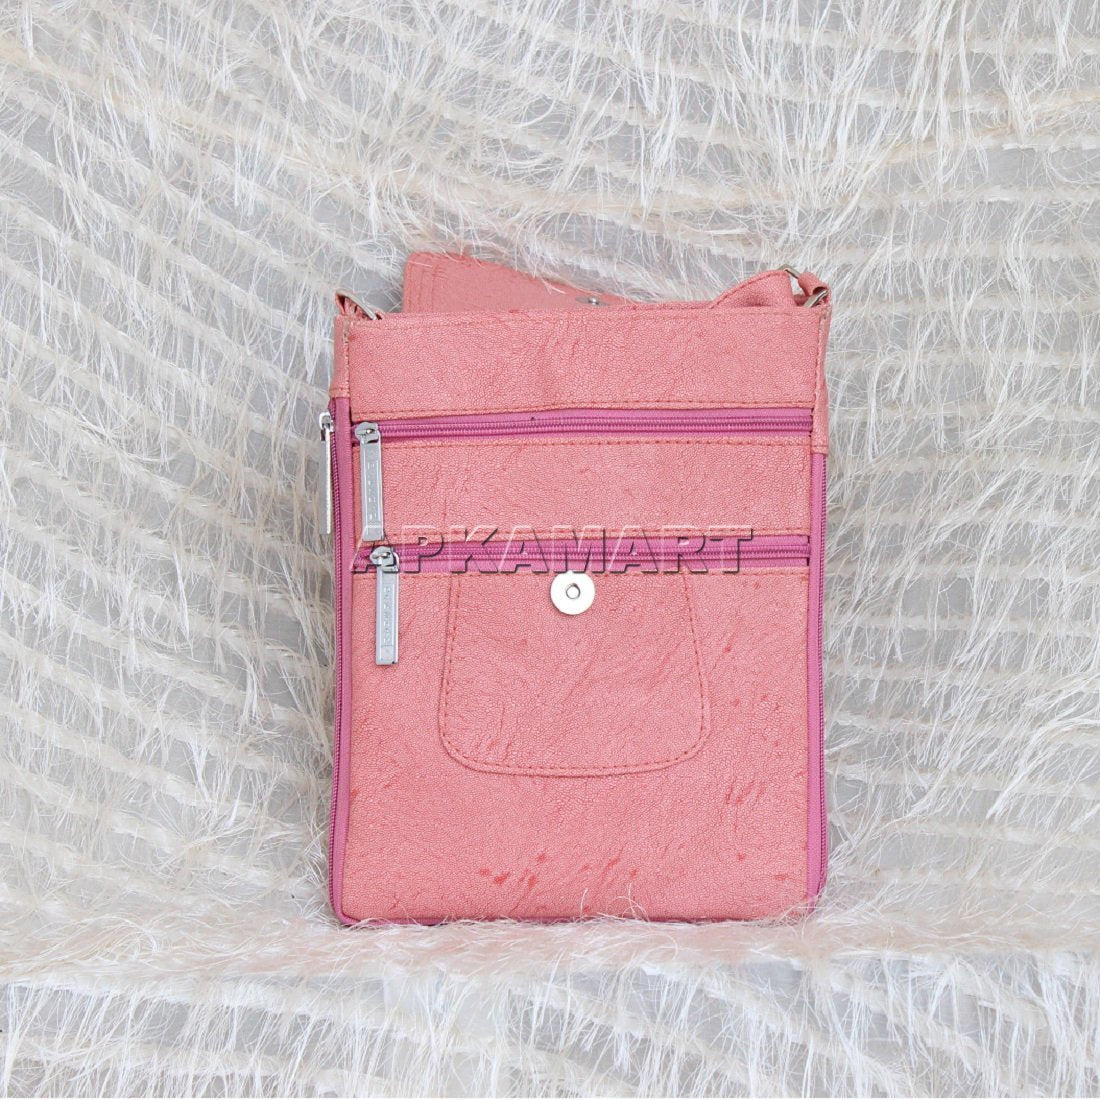 Ladies Handbags - Sling Bags for Ladies - ApkaMart